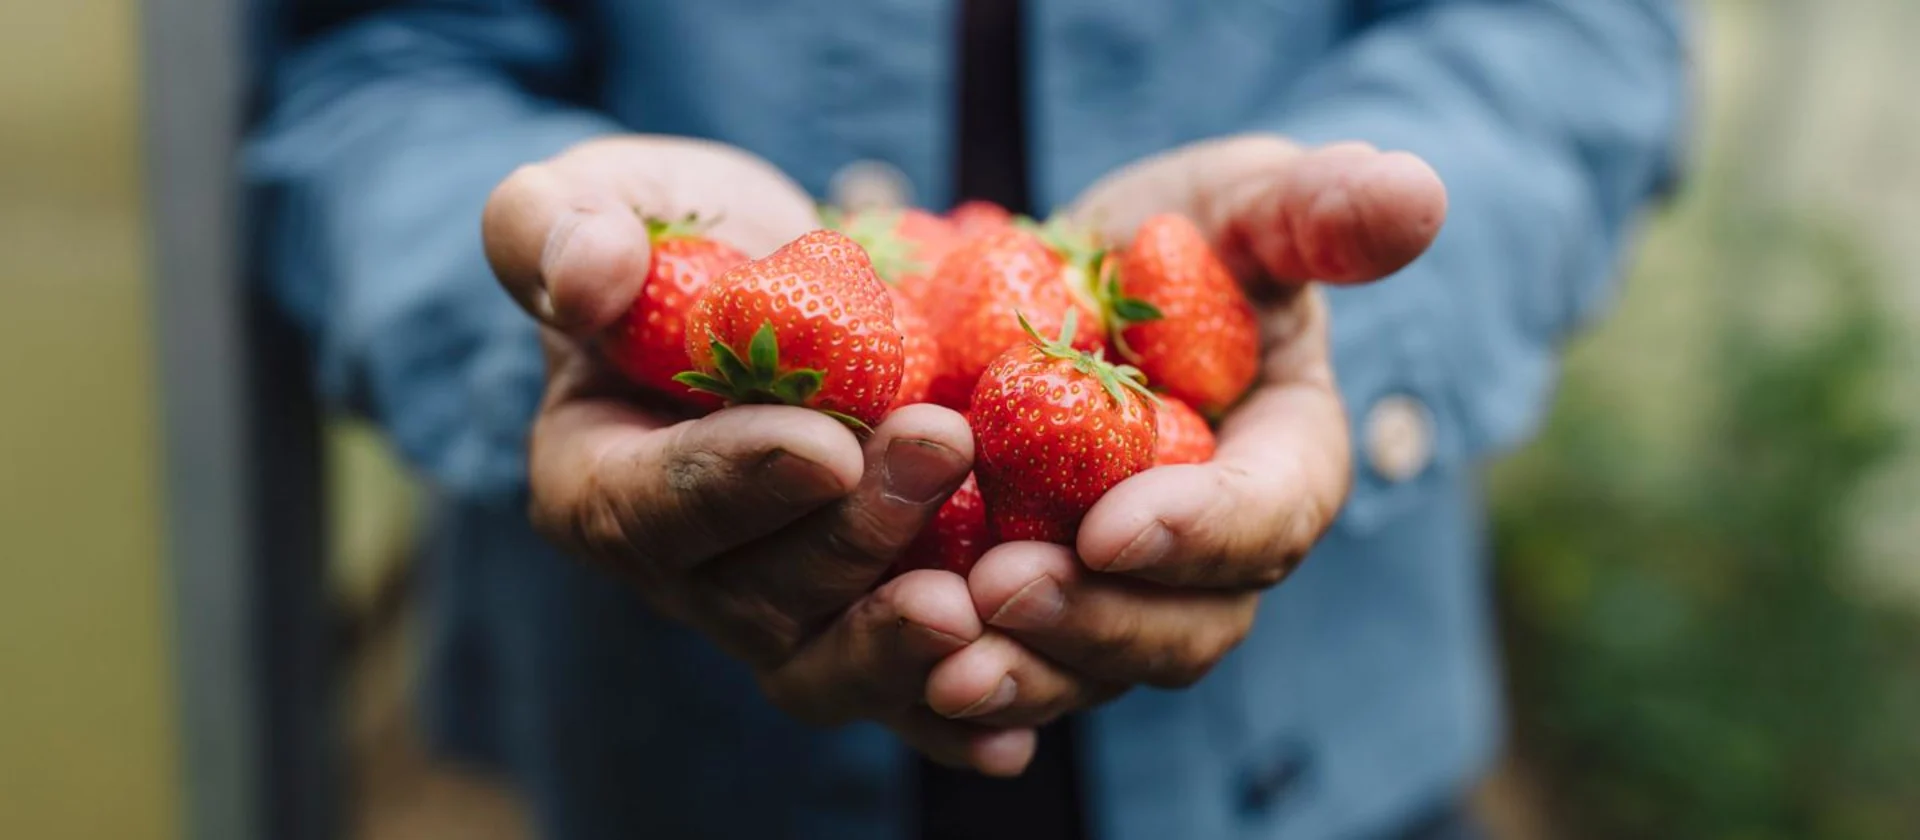 Handfull of strawberries